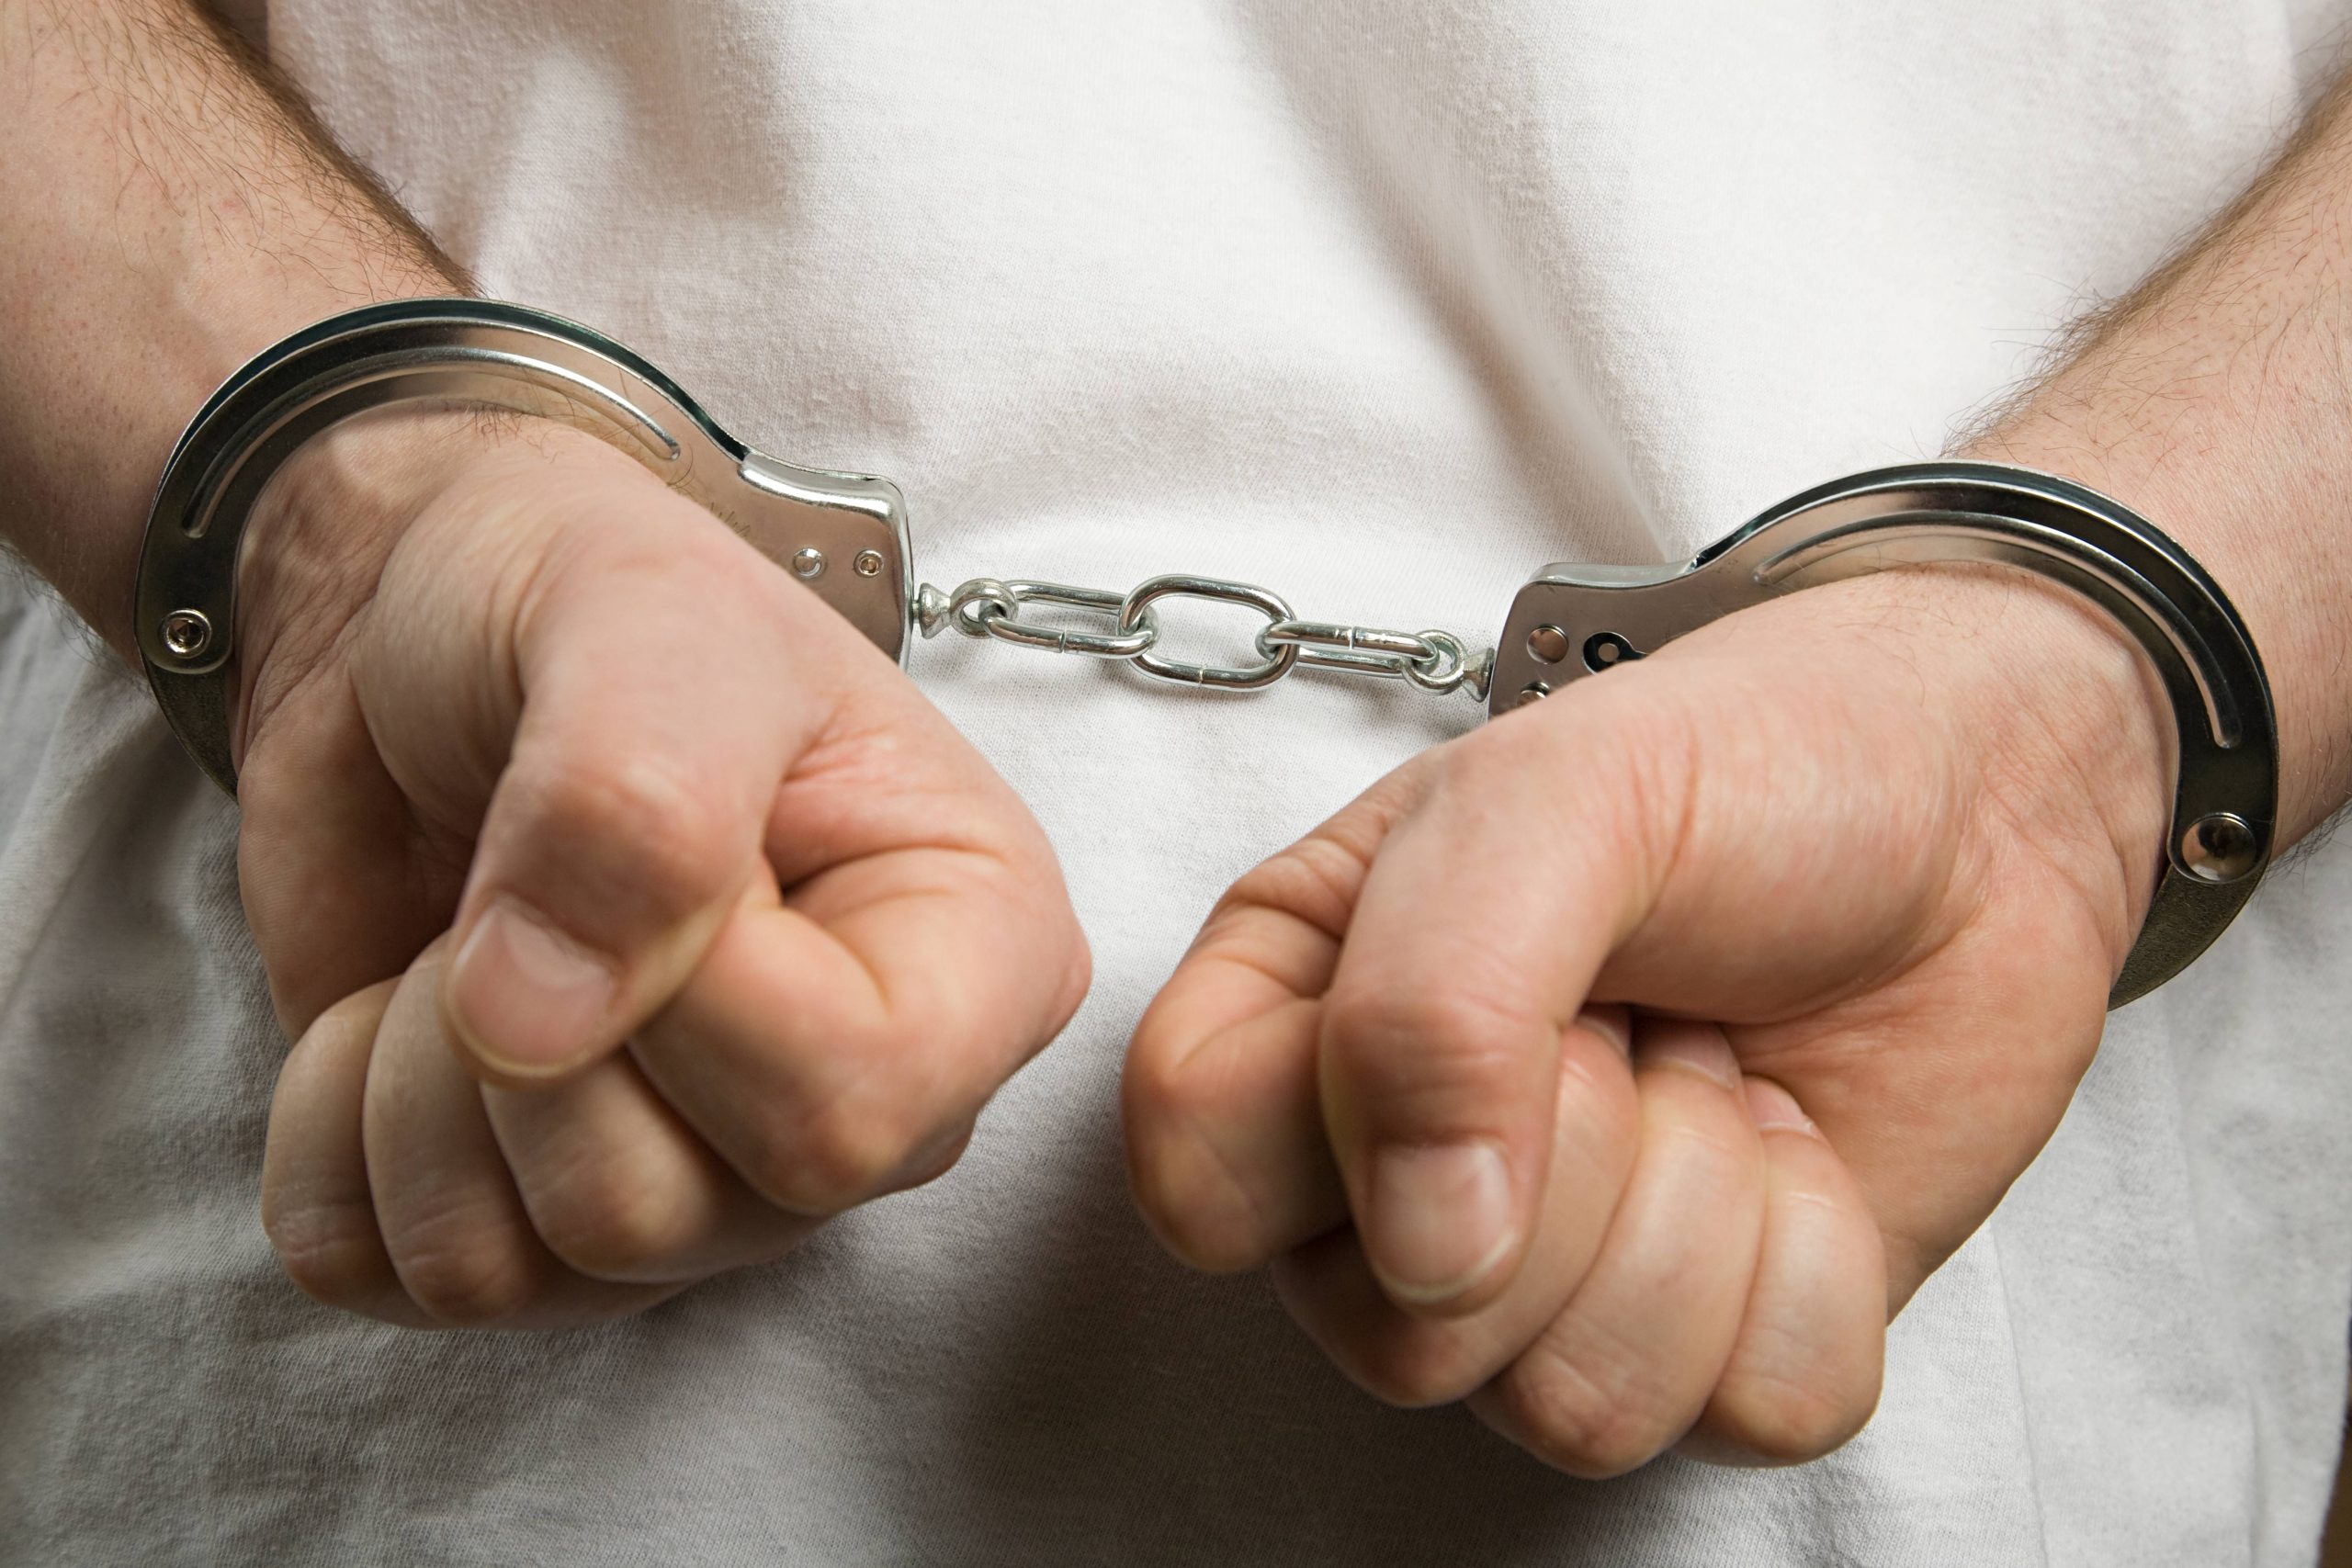 A Criminal Wearing Handcuffs